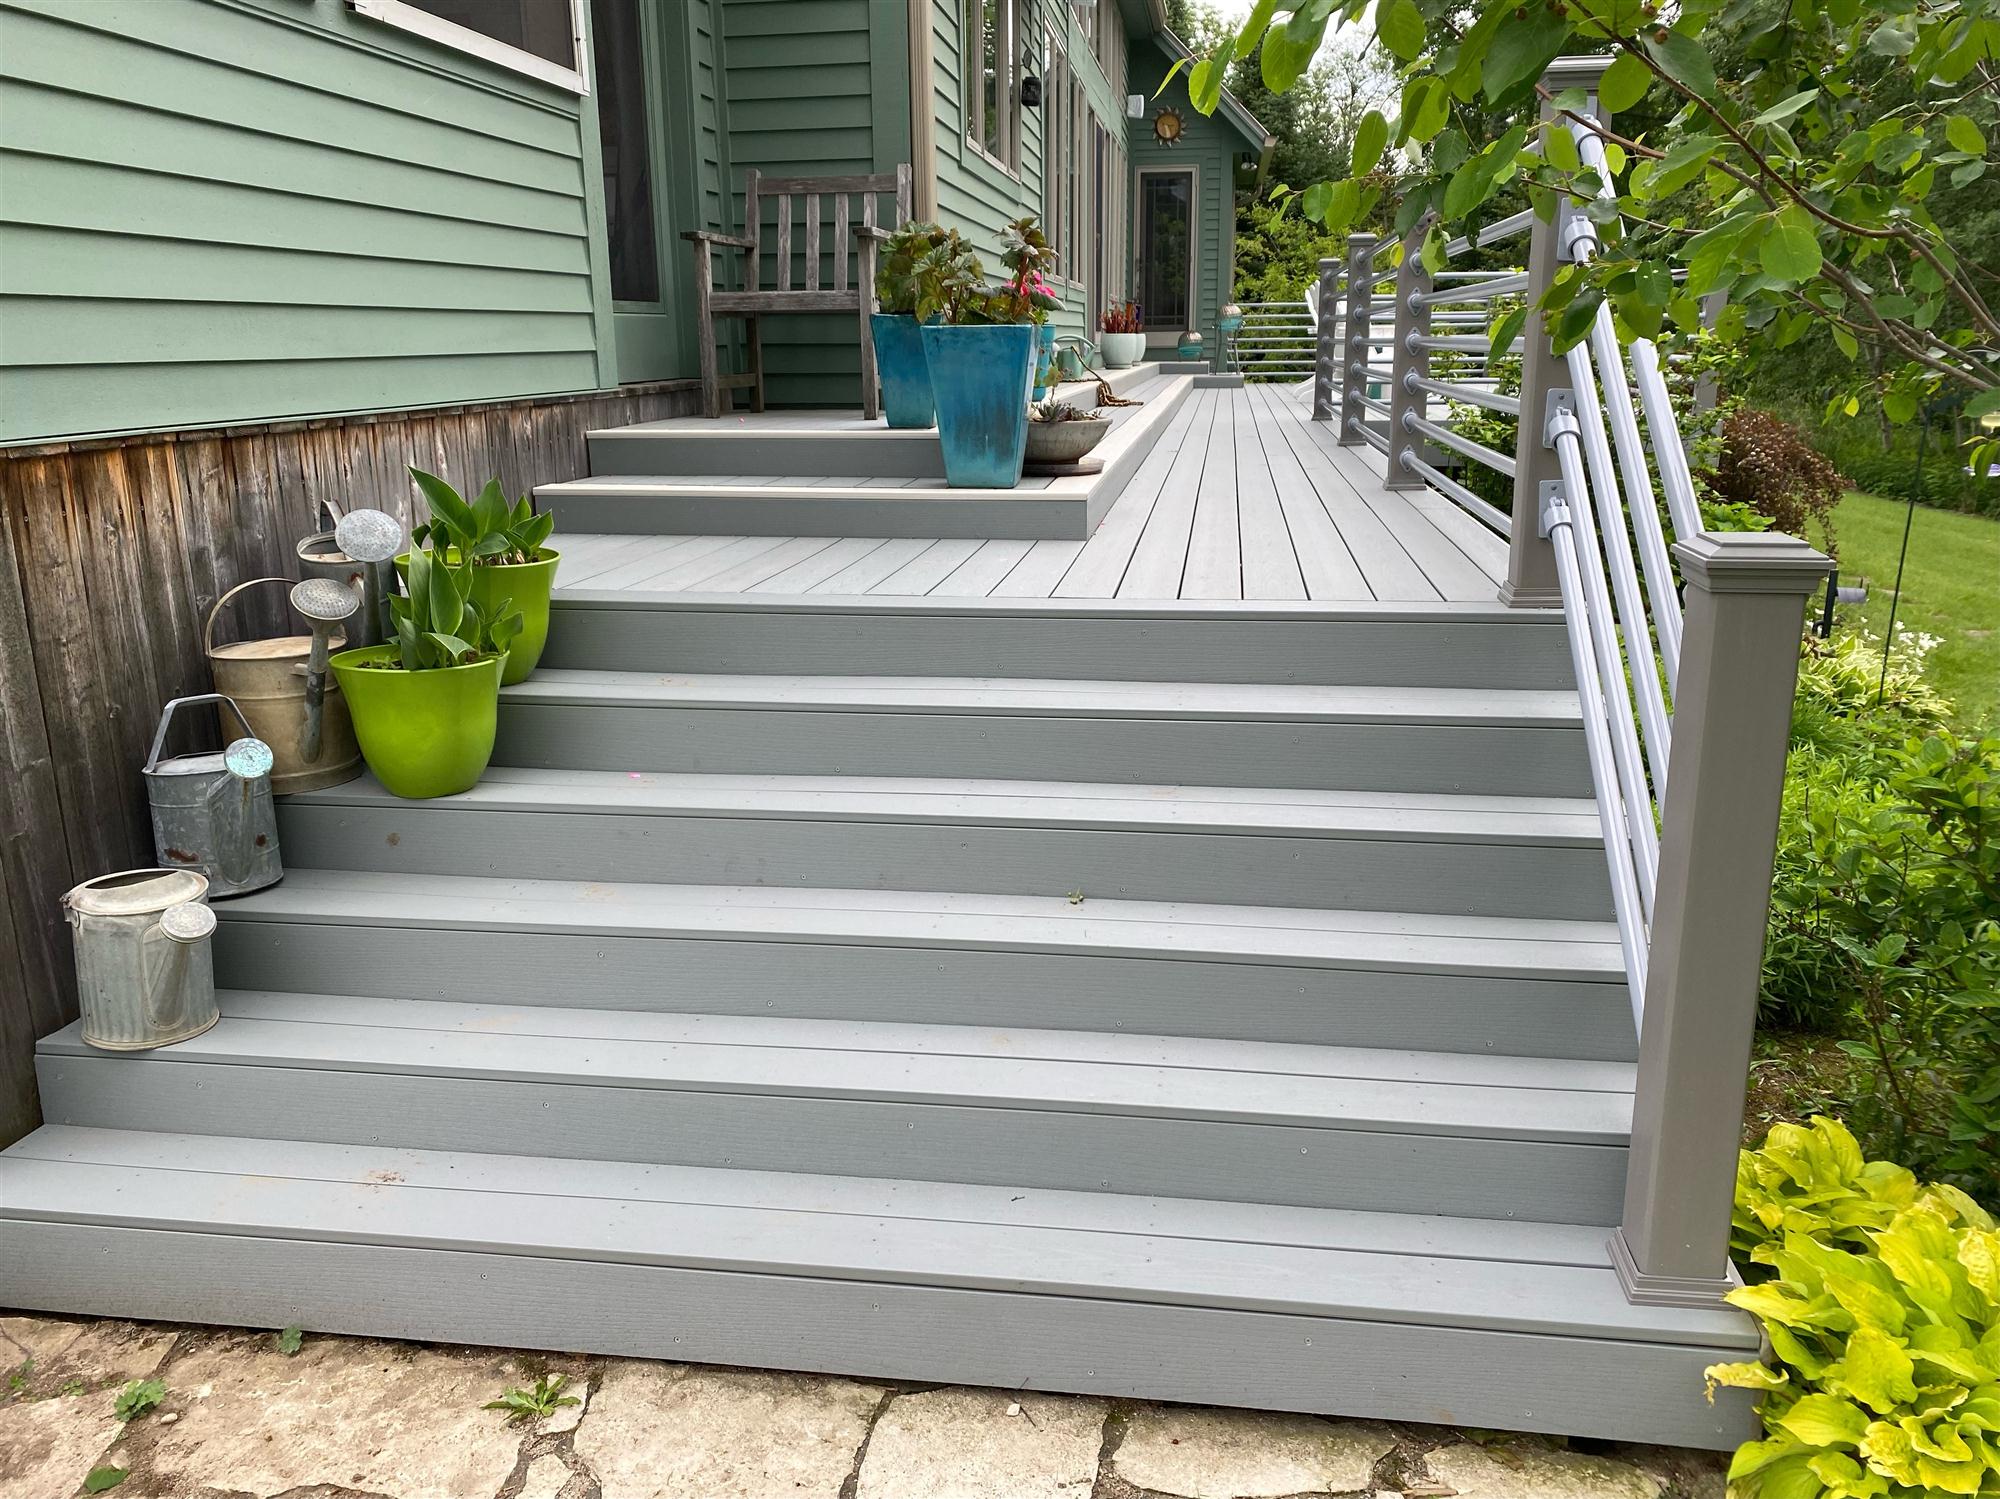 Backyard deck wooden steps